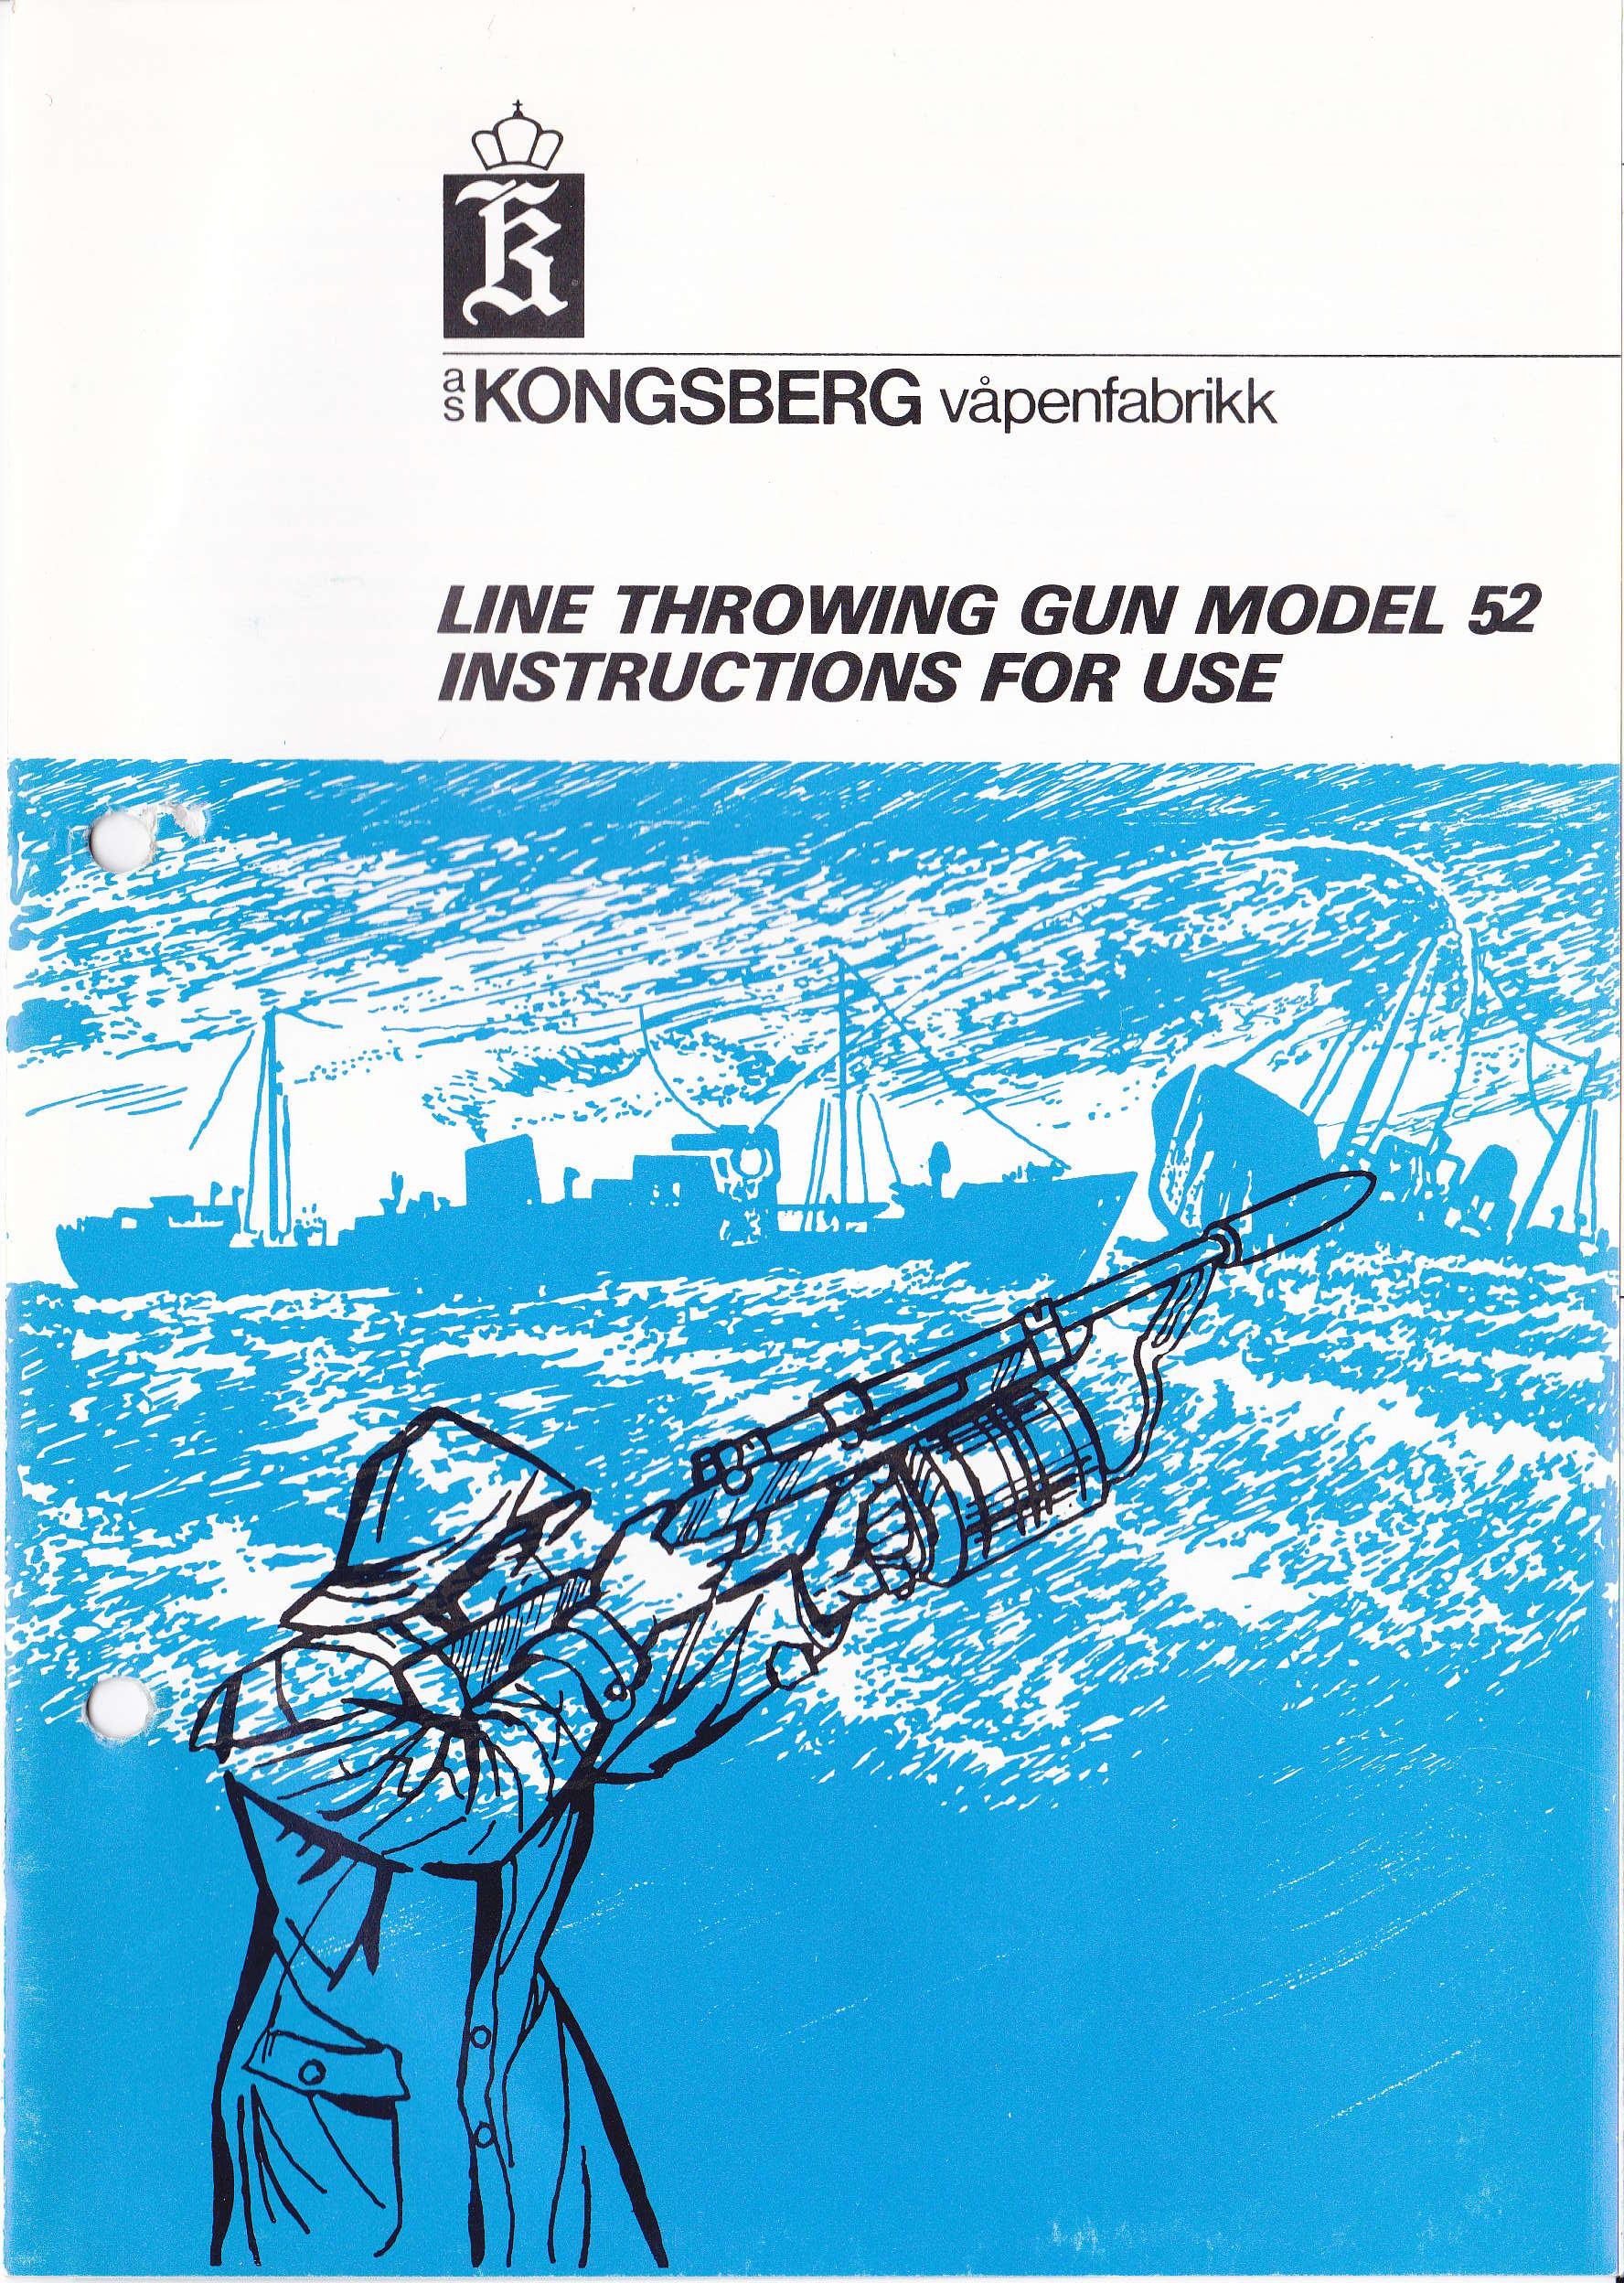 ./../guns/fangst/bilder/Fangst-Kongsberg-M52-Brosjyre-Engelsk-1.jpg